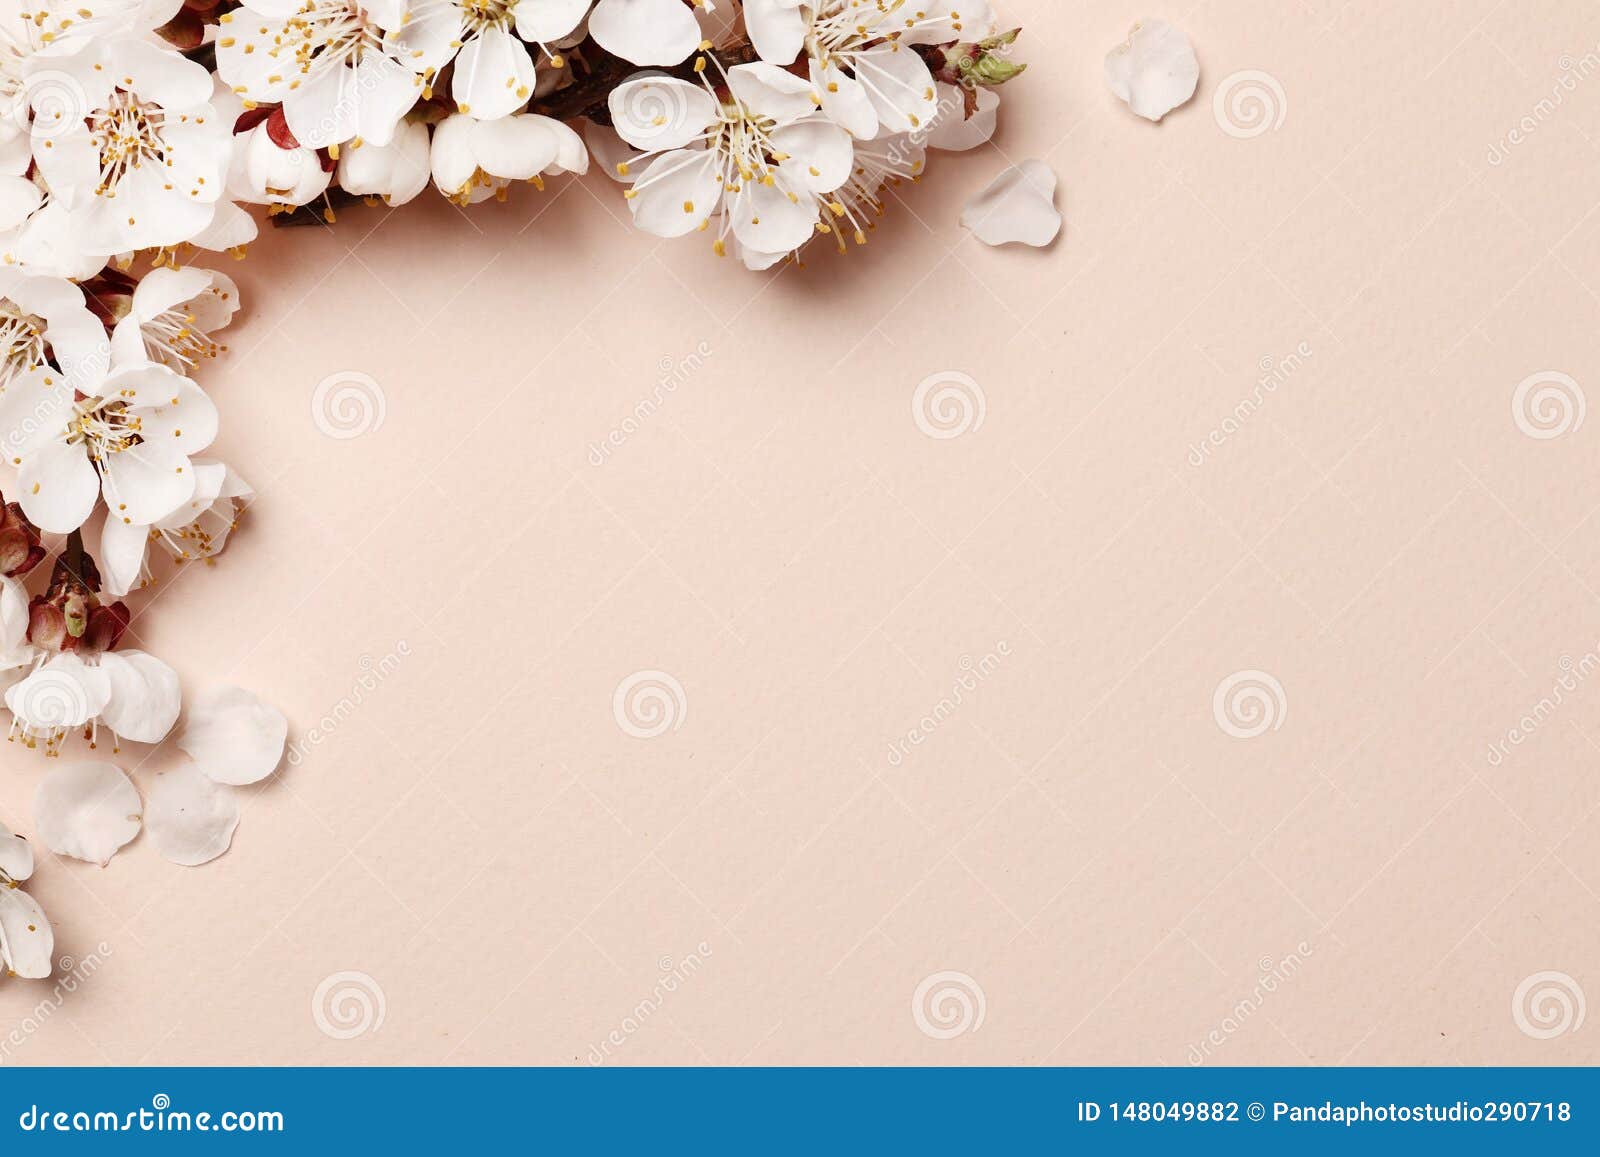 Spring Floral Background Wallpaper –